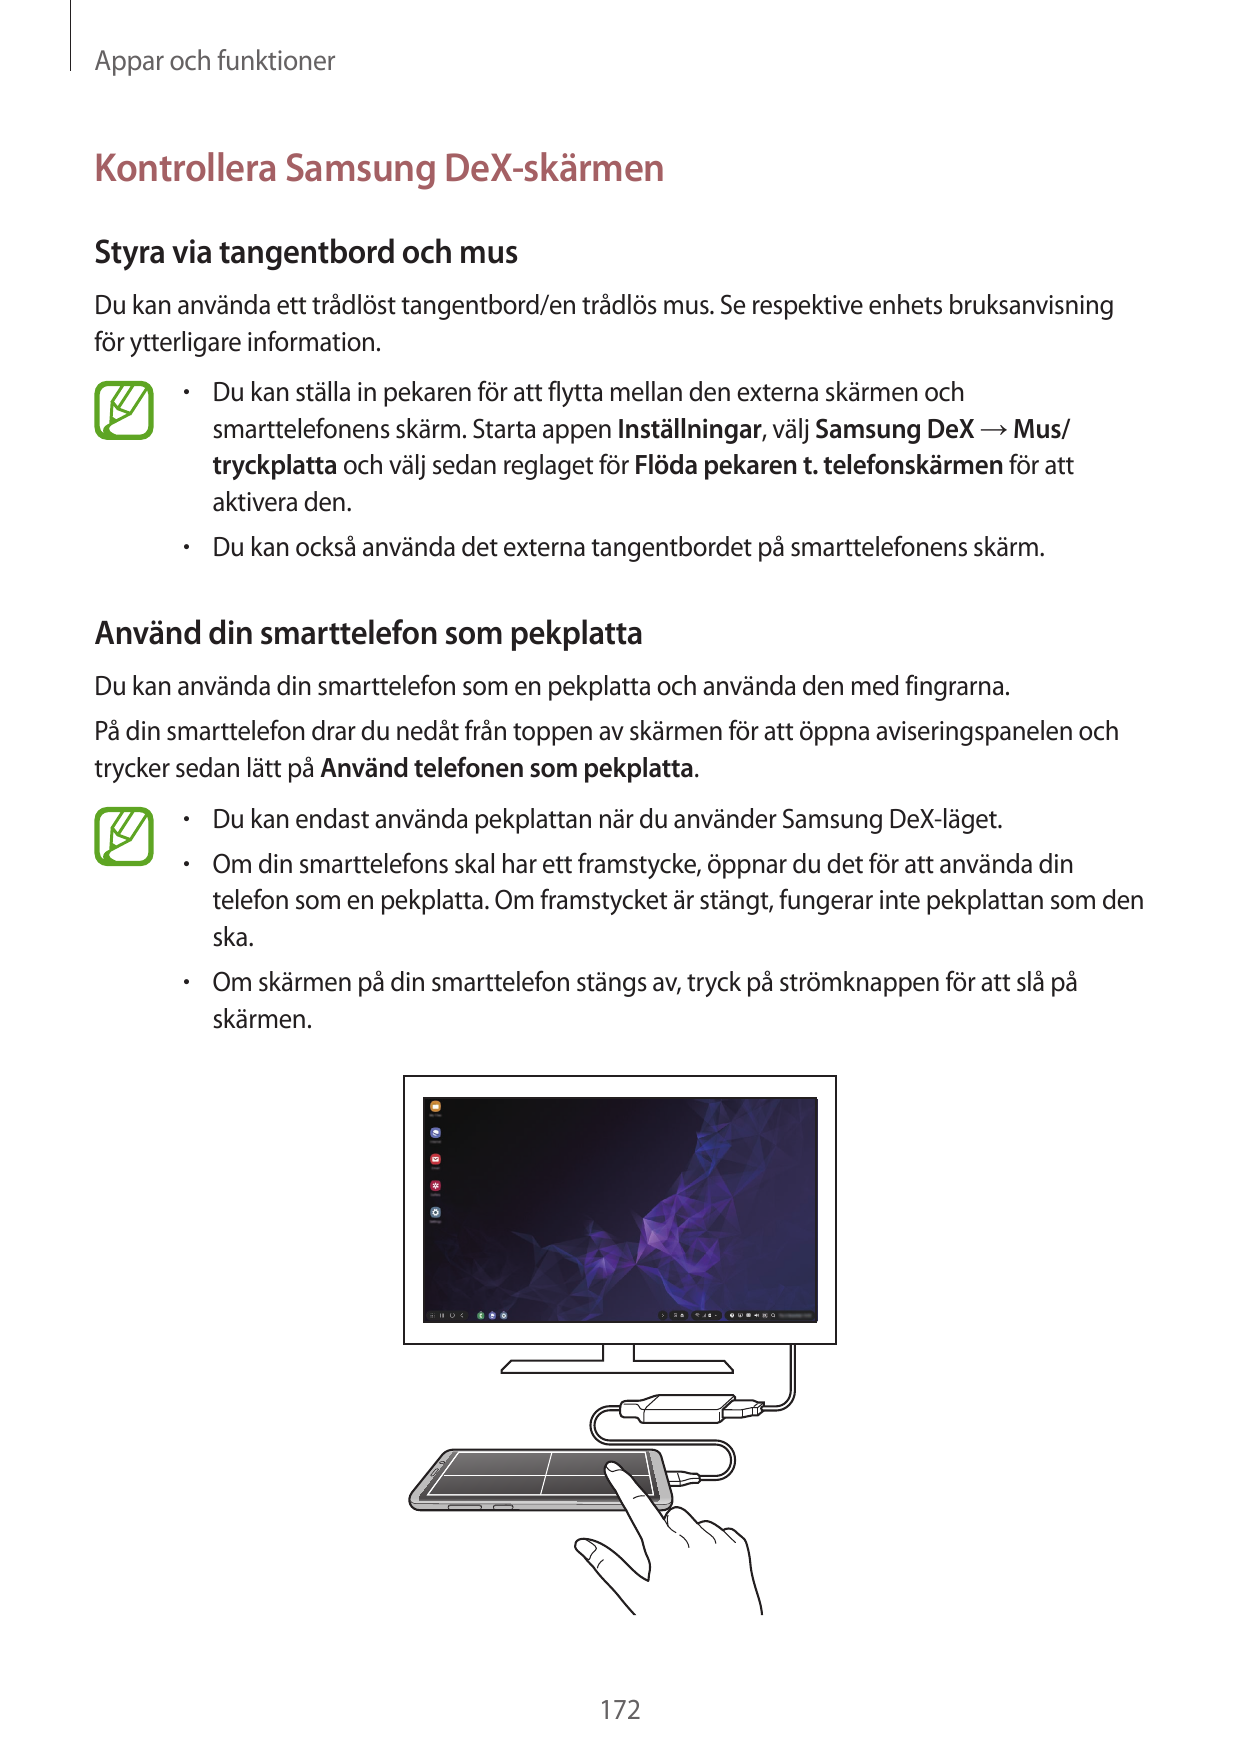 Appar och funktionerKontrollera Samsung DeX-skärmenStyra via tangentbord och musDu kan använda ett trådlöst tangentbord/en trådl